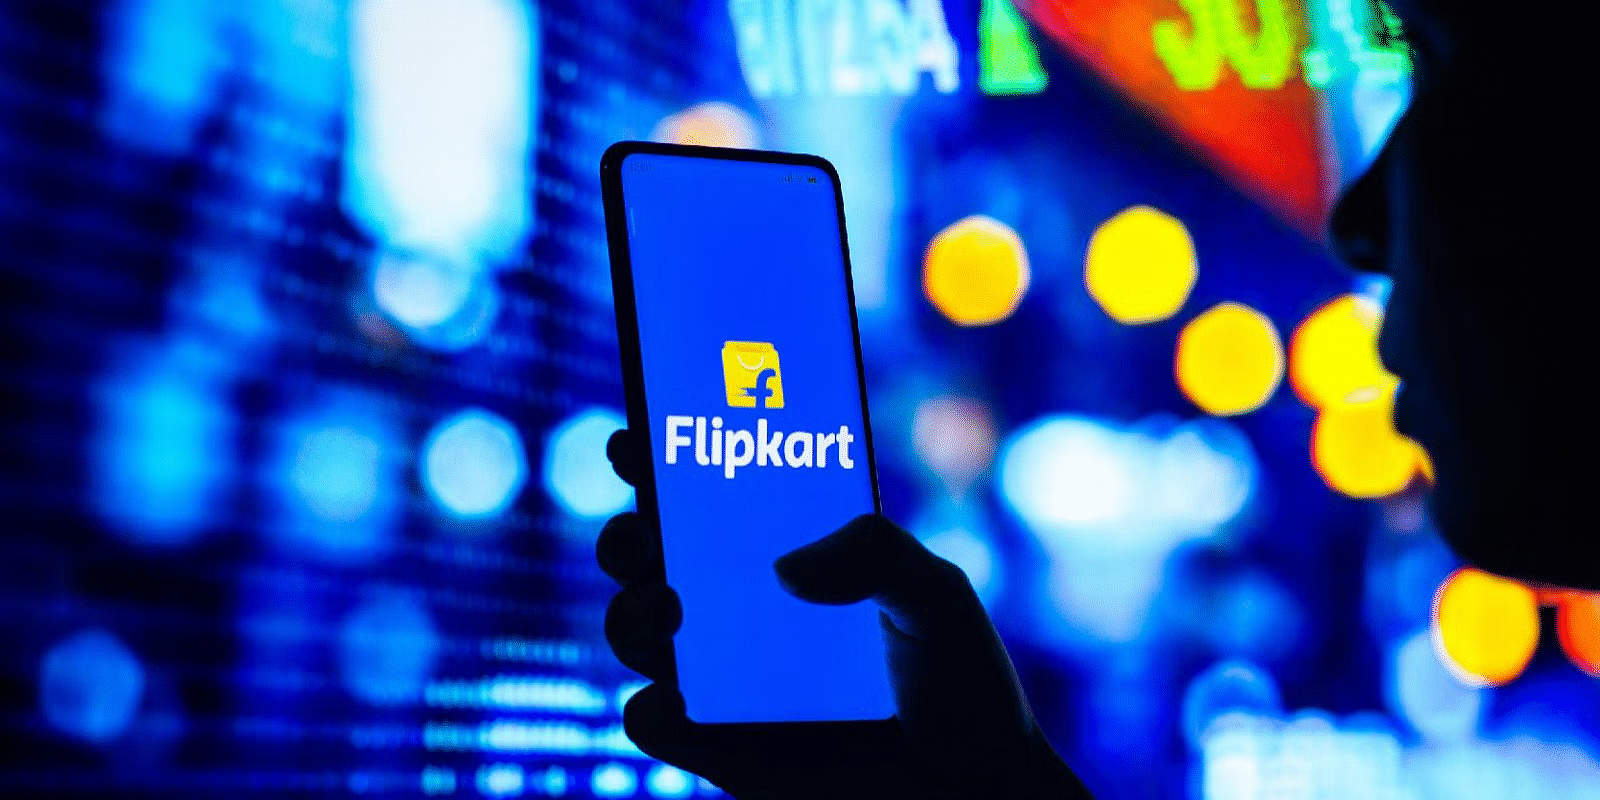 Flipkart की वैल्यूएशन दो साल में 41,000 करोड़ रुपये घटी: रिपोर्ट